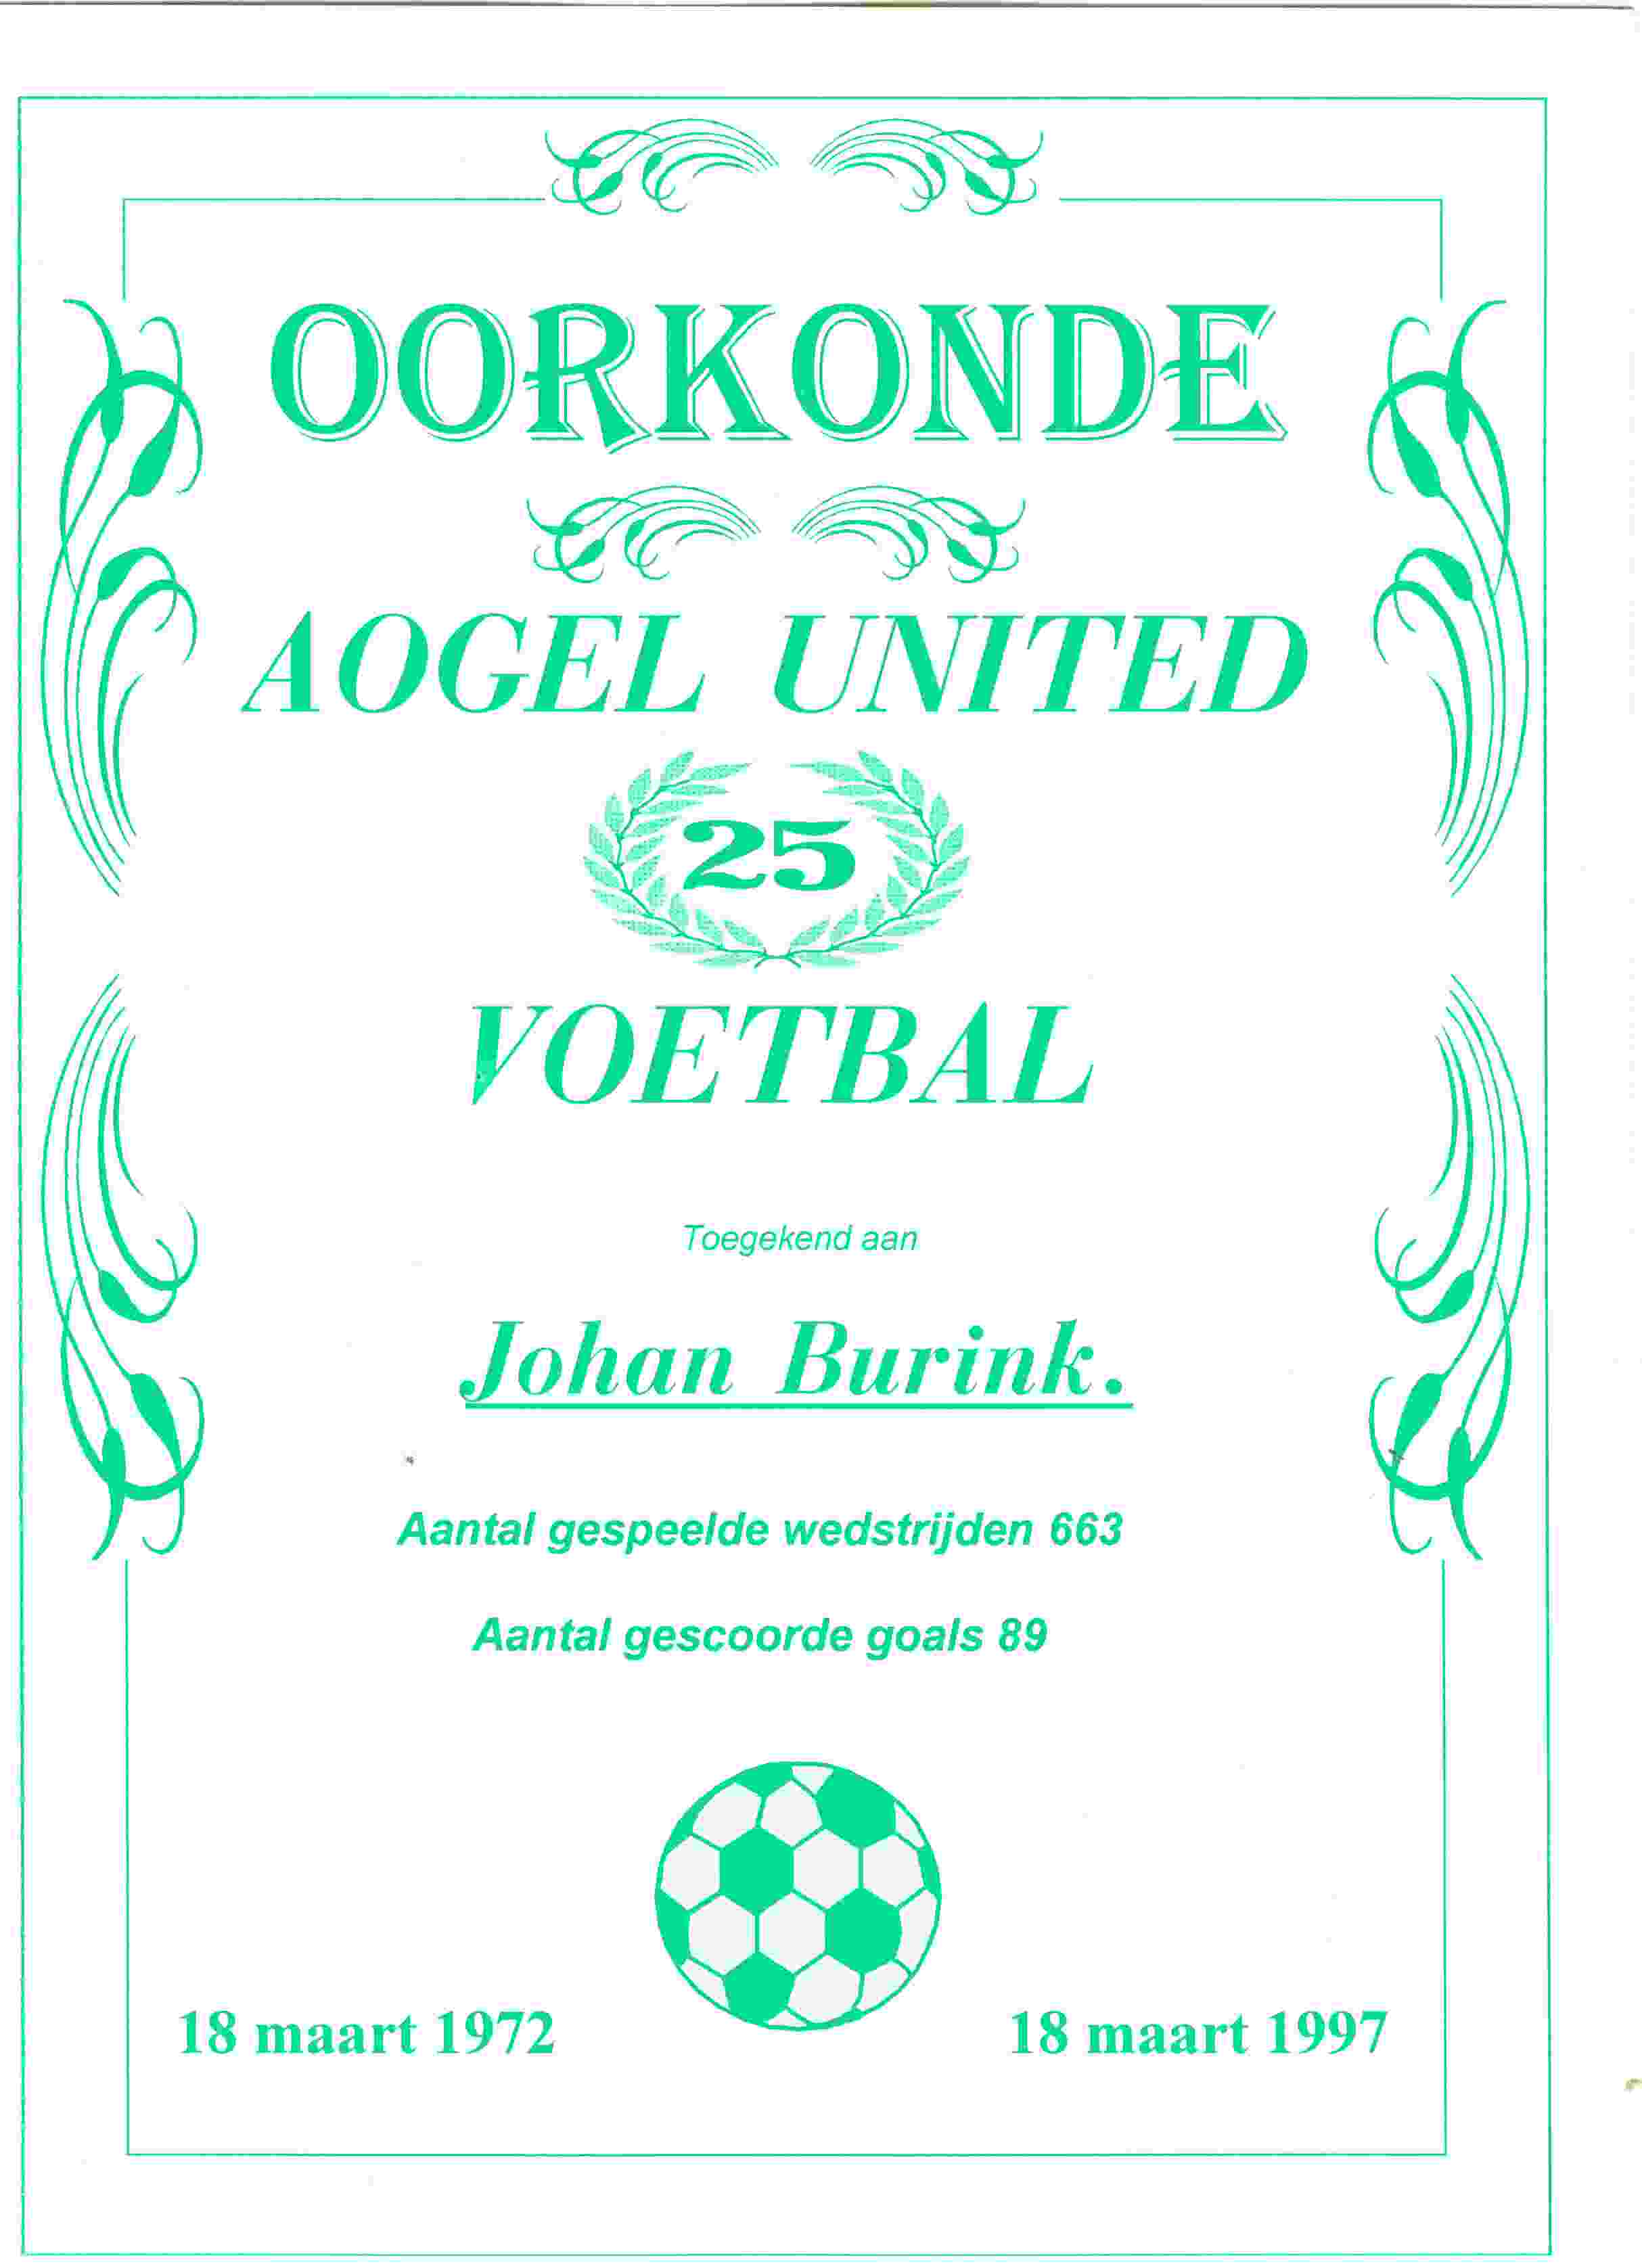 1997-03-22 Johan ontvangt oorkonde voor 25 jaar bewezen diensten voor Aogel United